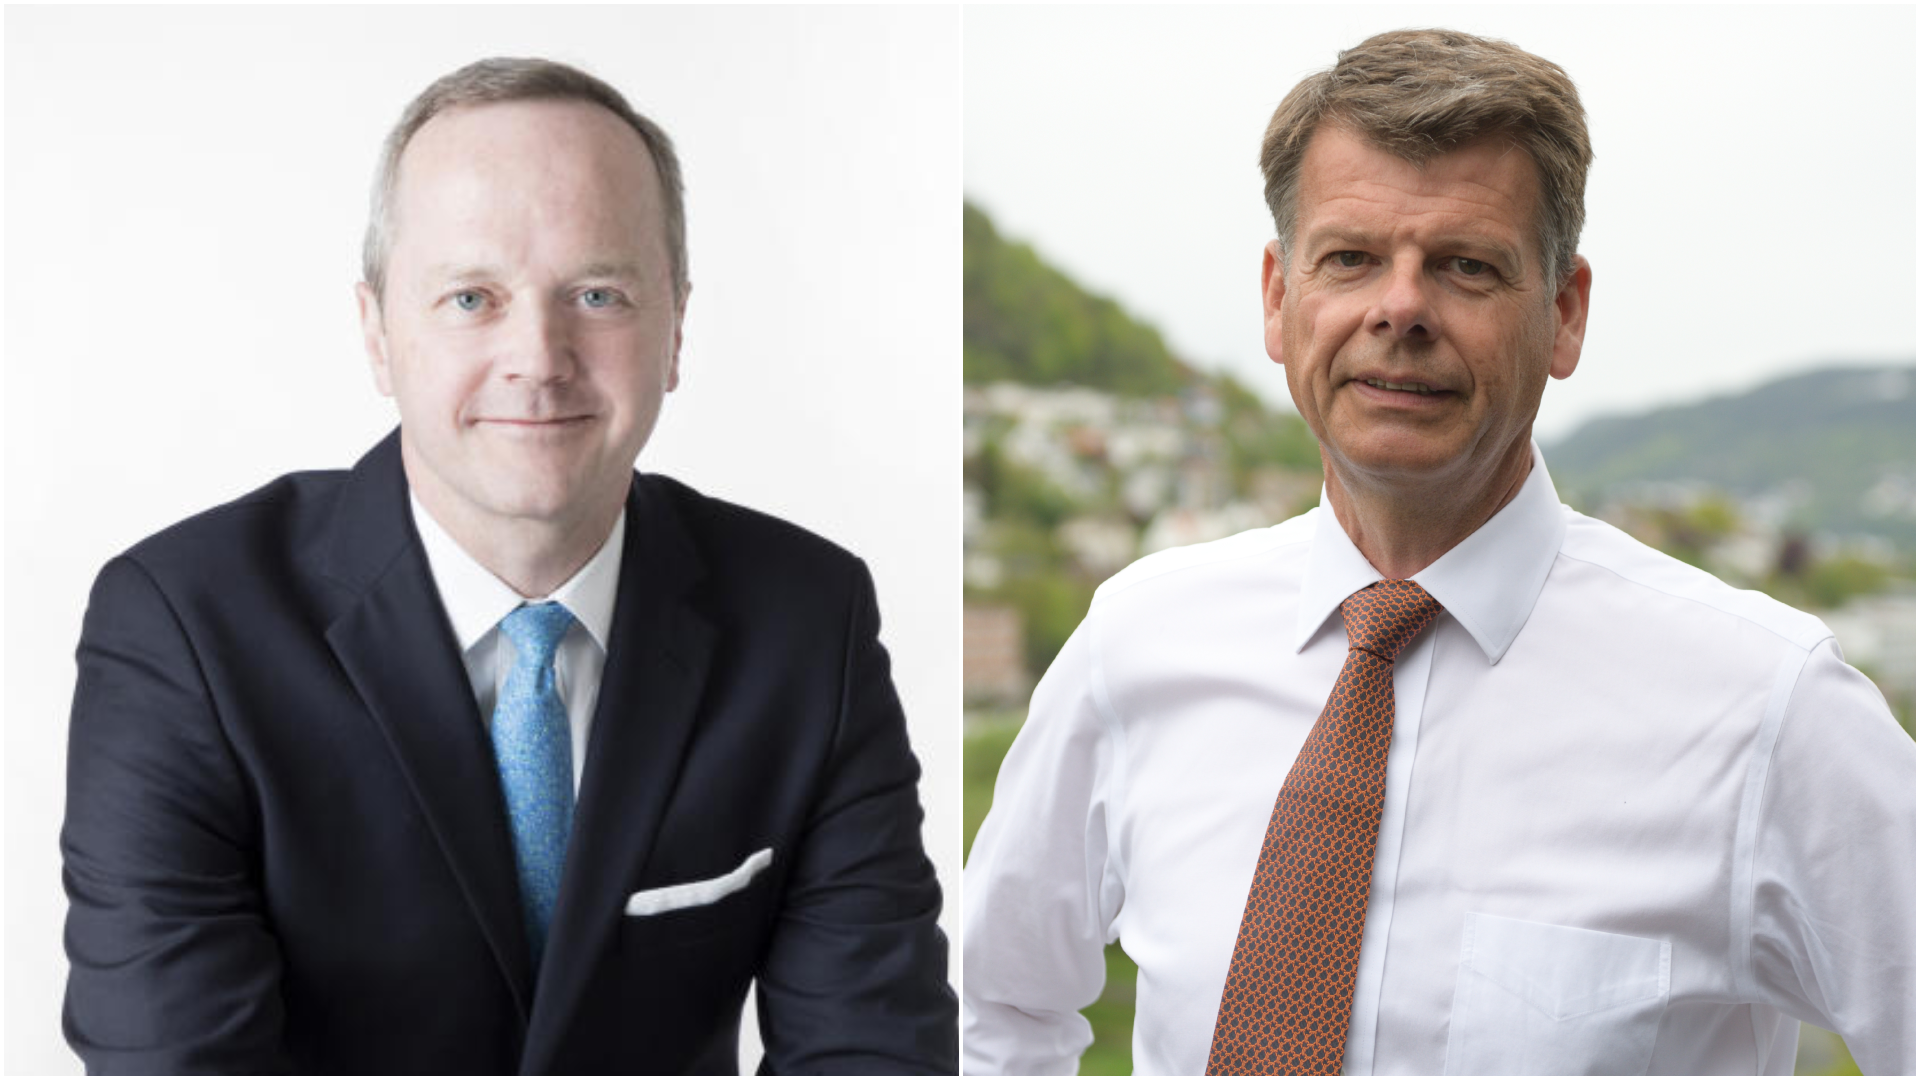 From left: Jens F. Grüner-Hegge, CFO of Stolt-Nielsen, and Harald Fotland, CEO of Odfjell. | Photo: Stolt-Nielsen og Gunnar Eide/Odfjell